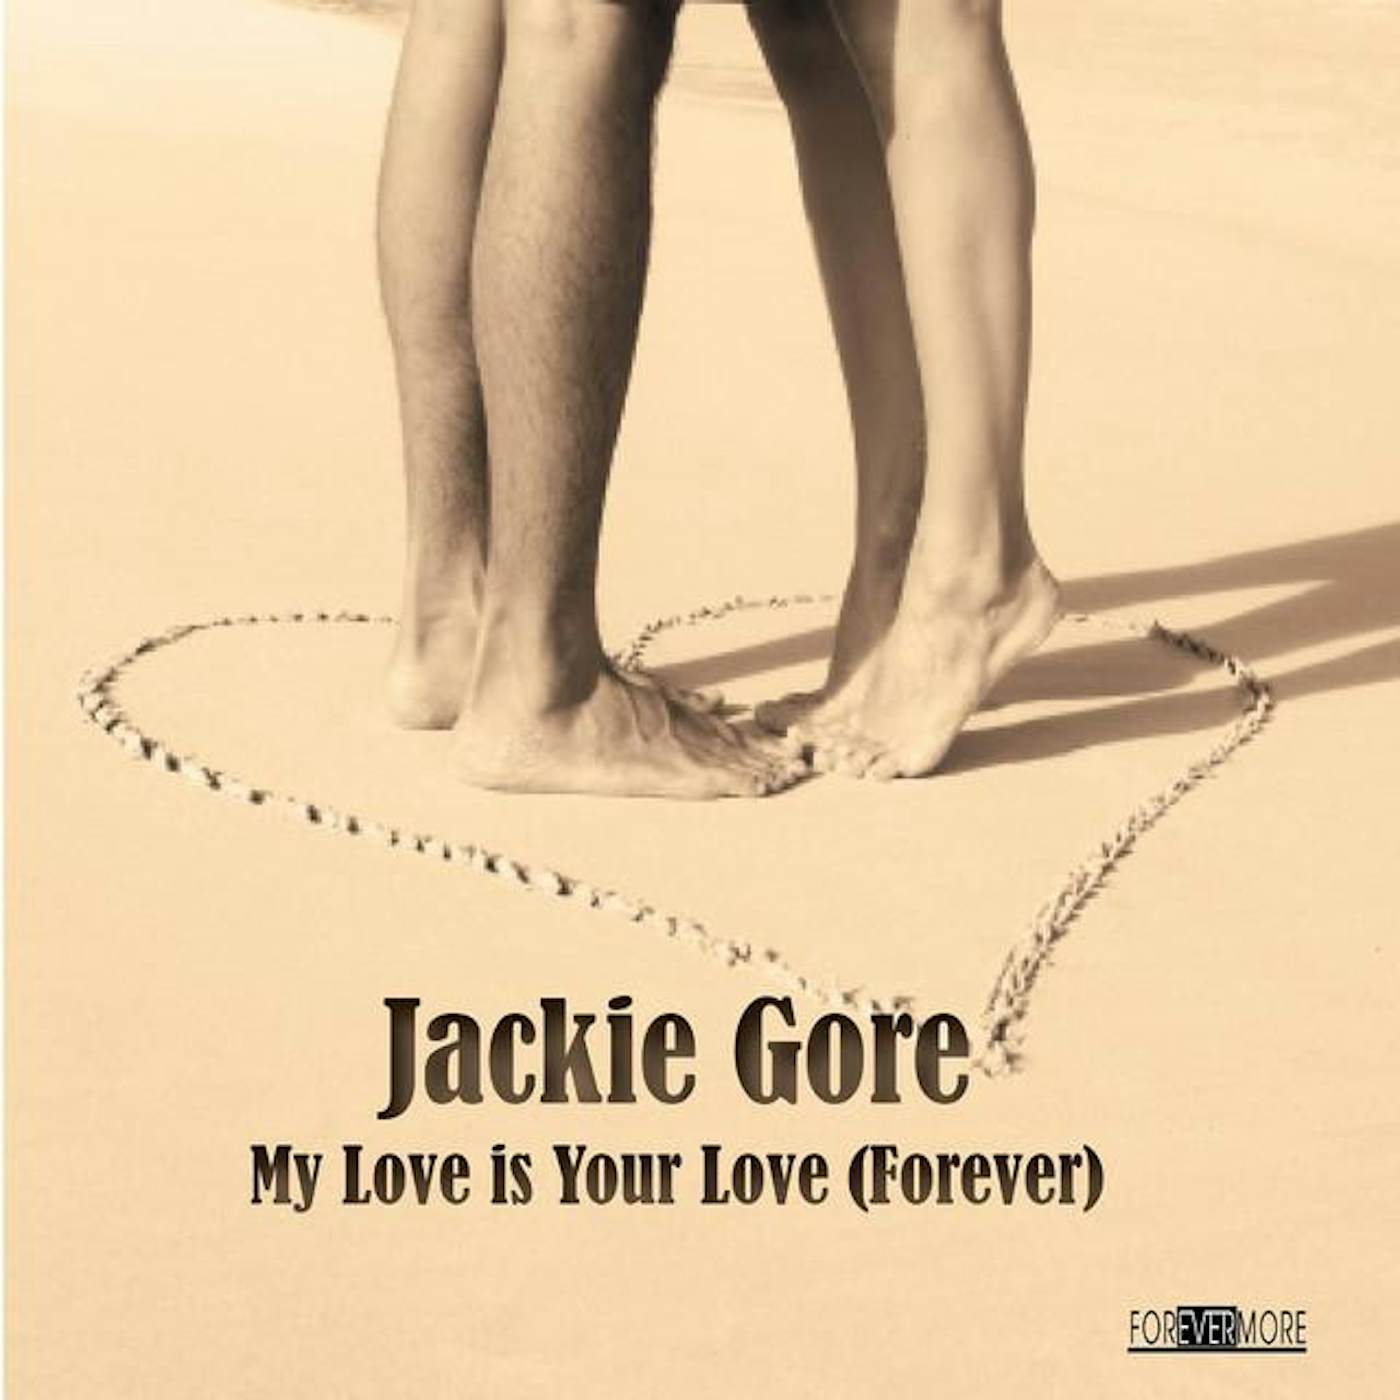 Jackie Gore